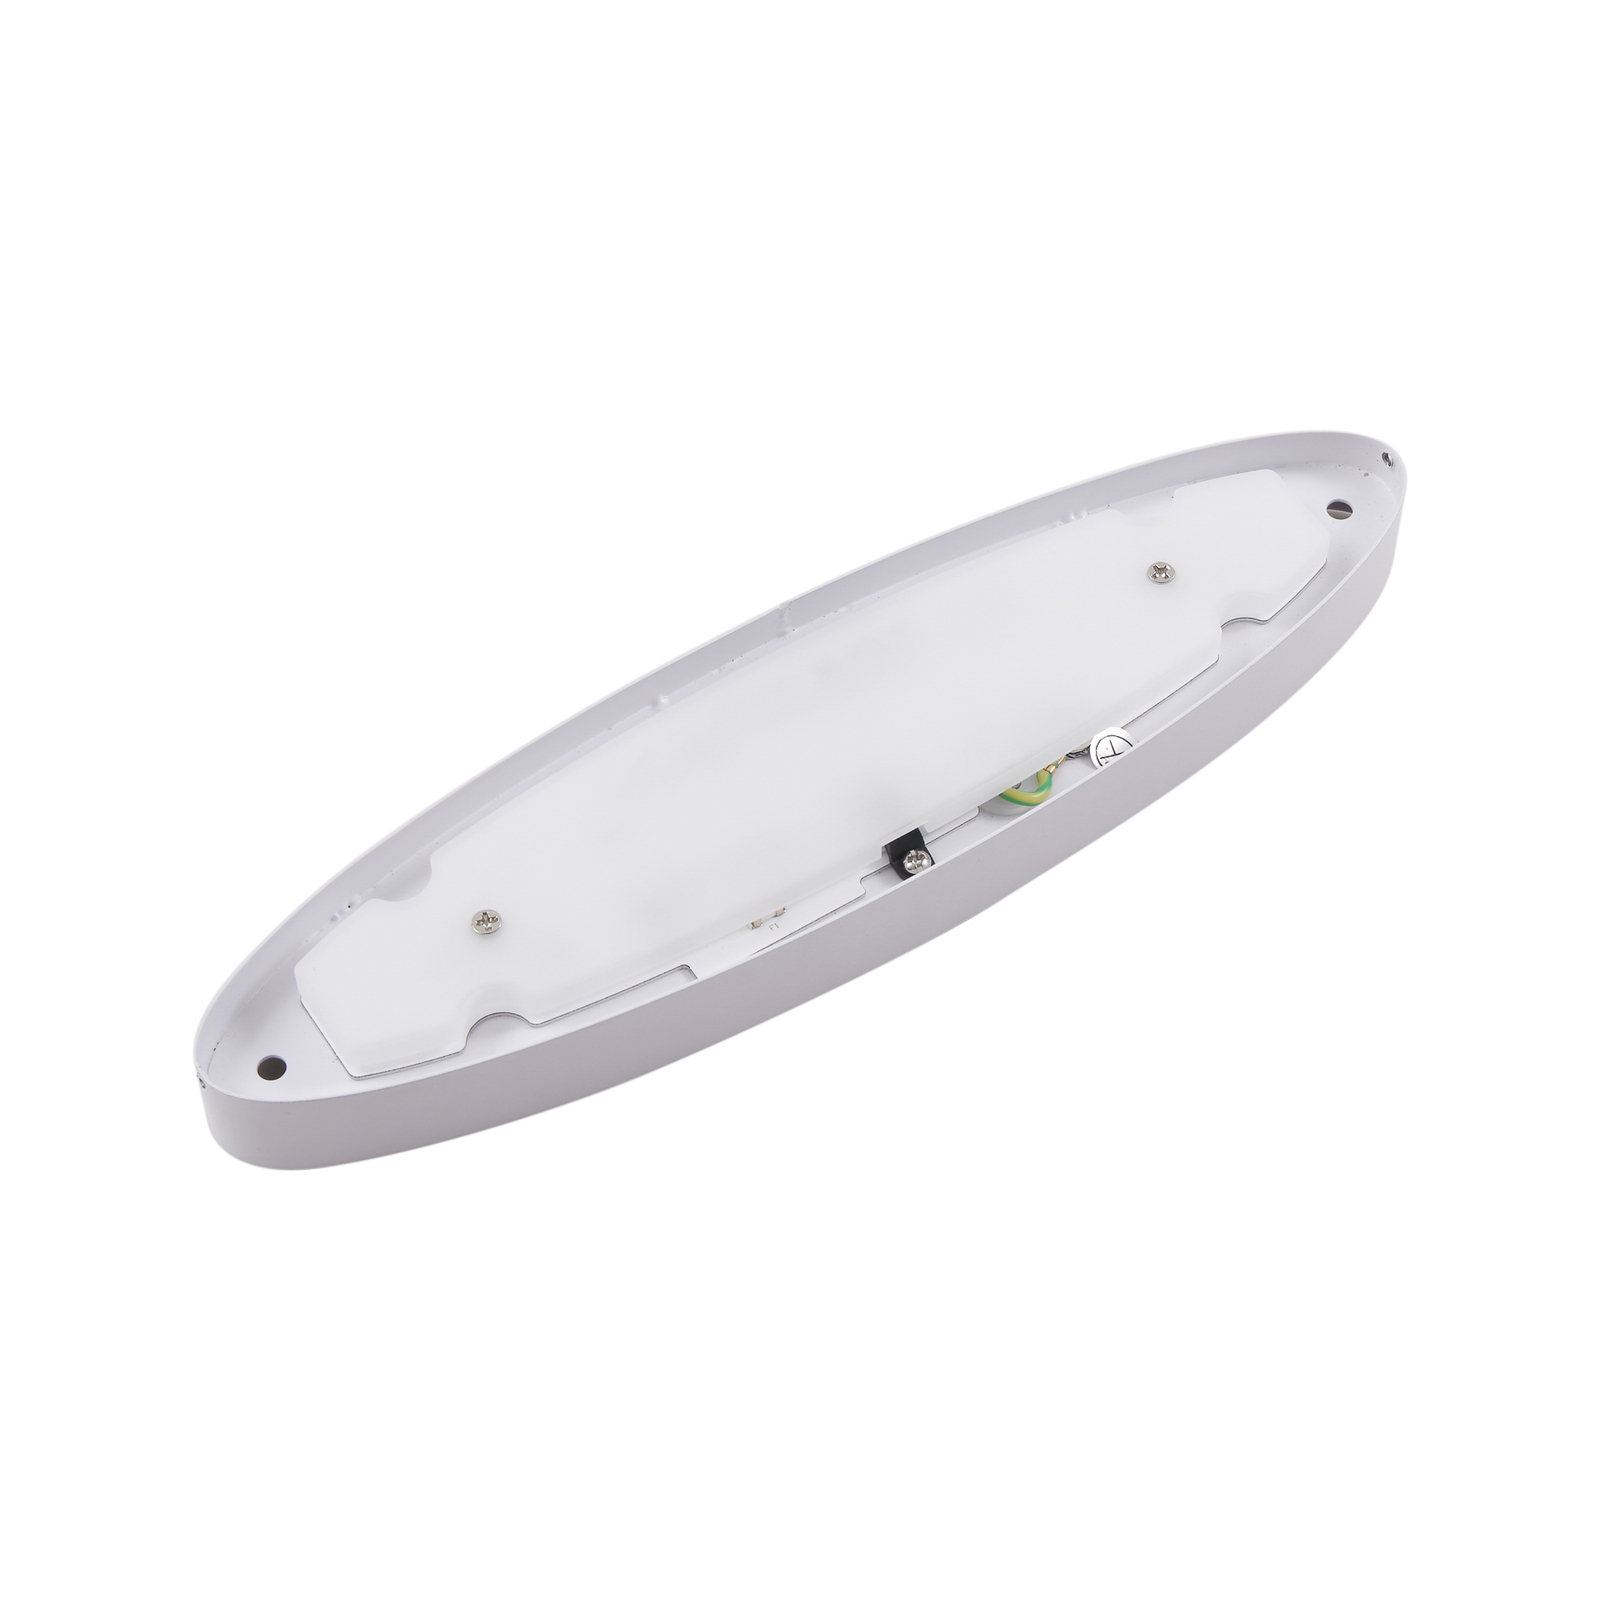 Lucande LED wall light Leihlo, white, plastic, 8 cm high